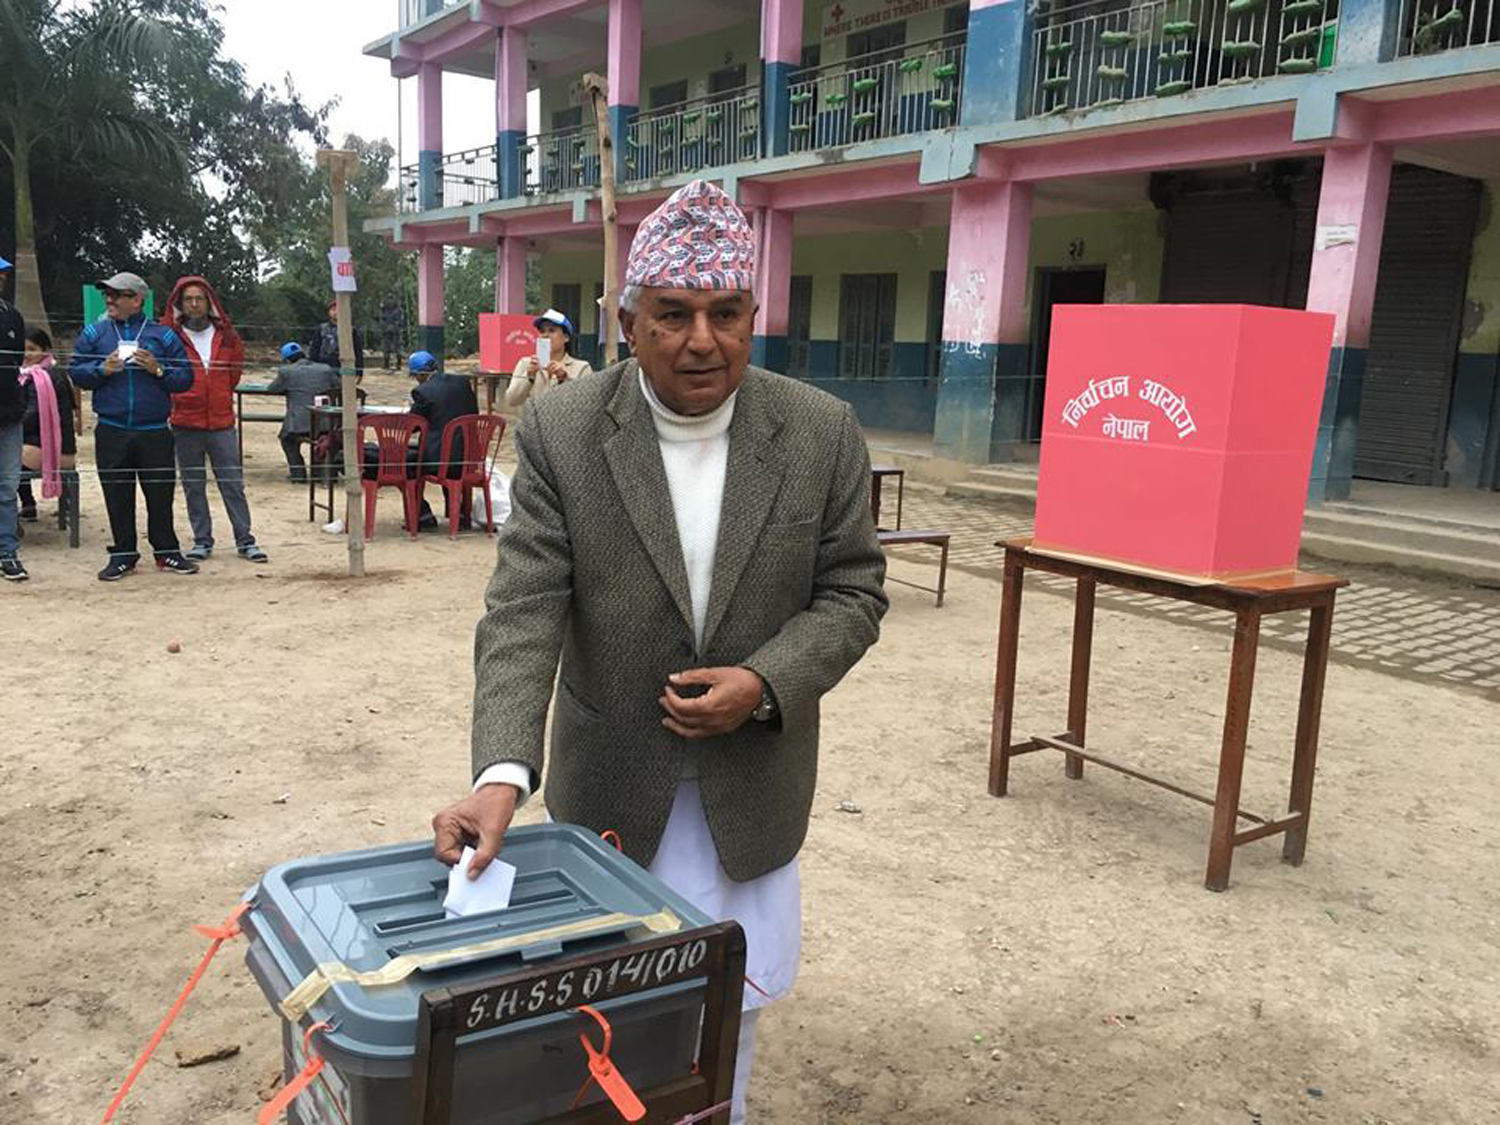 तनहुँस्थित व्यास नगरपालिकाको सत्यवती मावि मतदान केन्द्रमा मतदान गर्दै नेपाली कांग्रेसका वरिष्ठ नेता रामचन्द्र पौडेल । तस्बिरः रासस